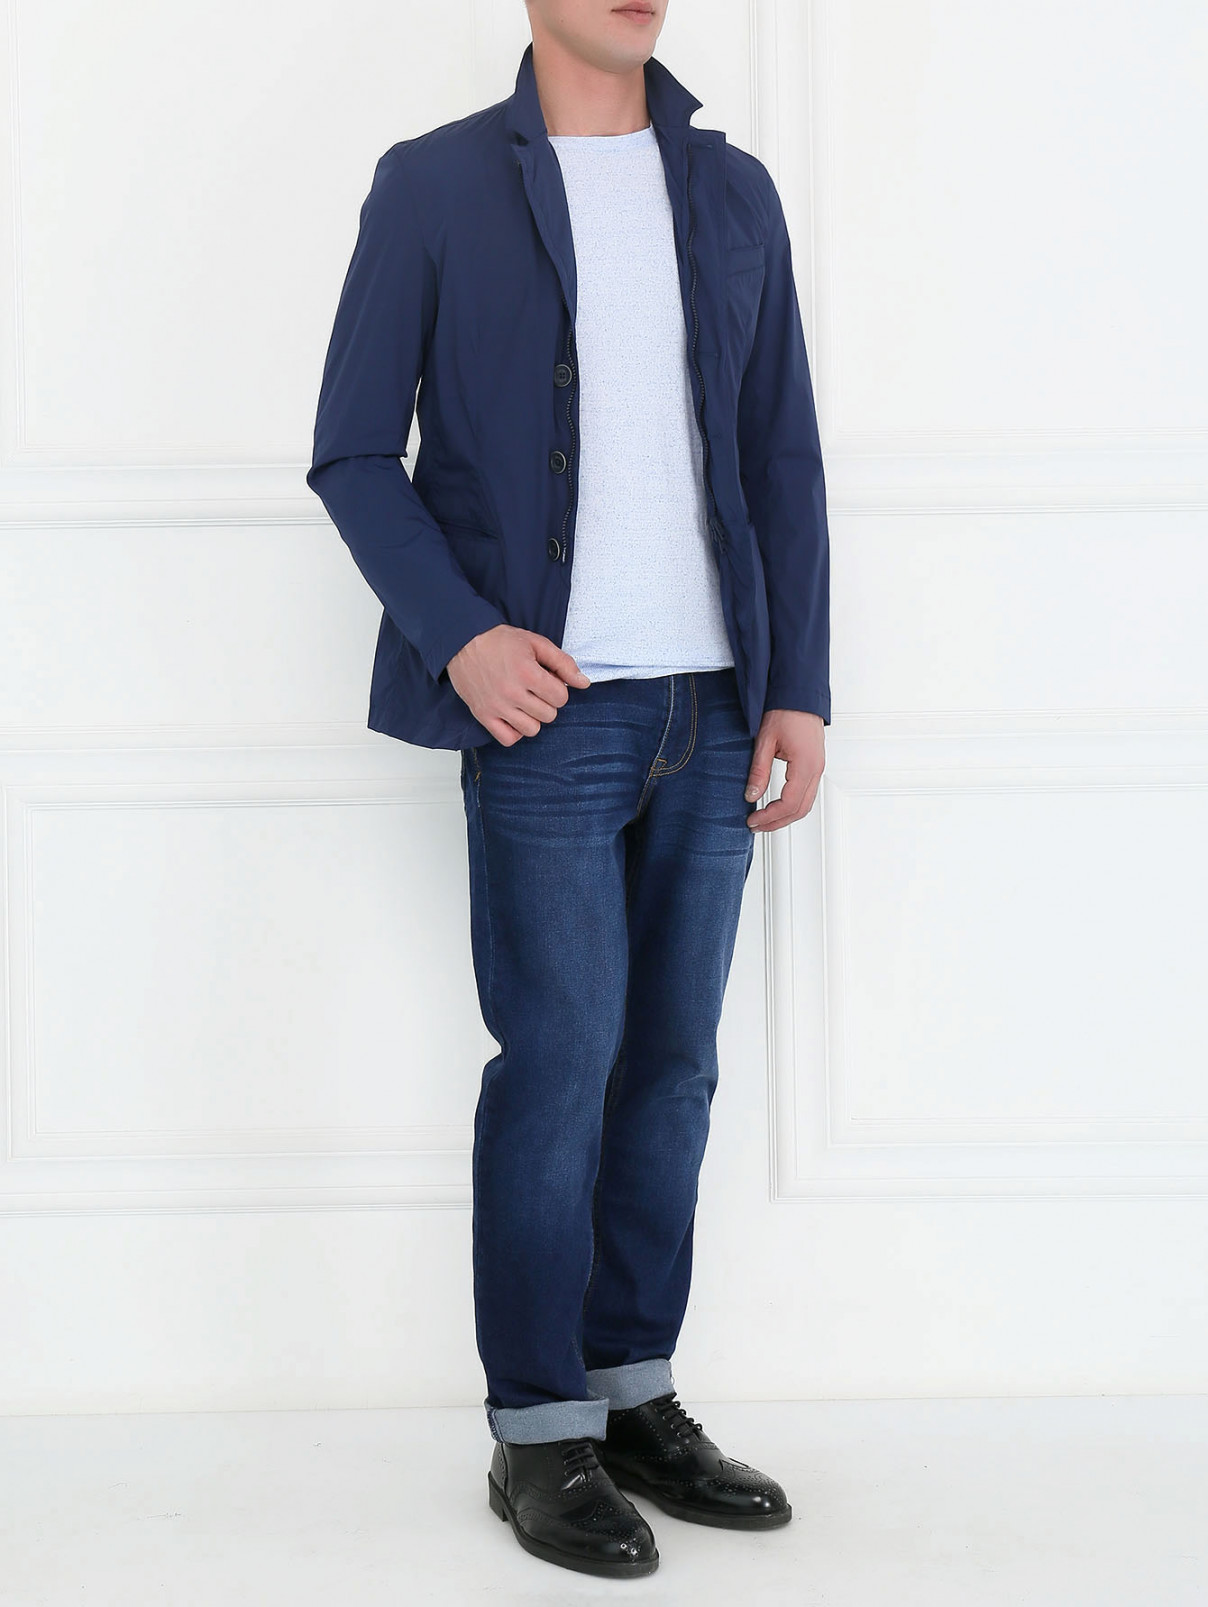 Куртка на пуговицах с накладными карманами Herno  –  Модель Общий вид  – Цвет:  Синий